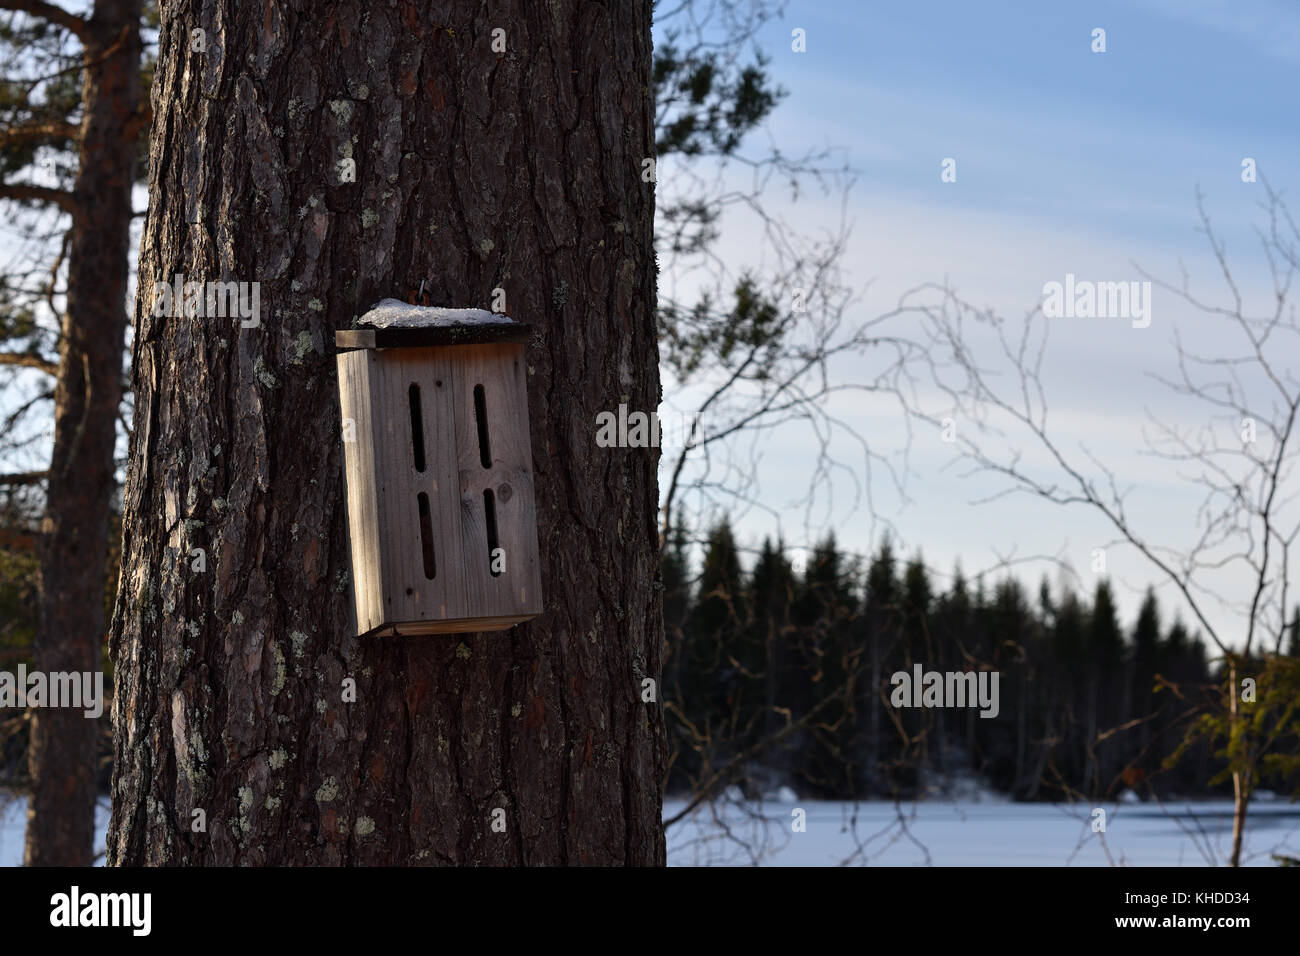 Maison de bourdon sur une tige de pin, photo du nord de la Suède. Banque D'Images